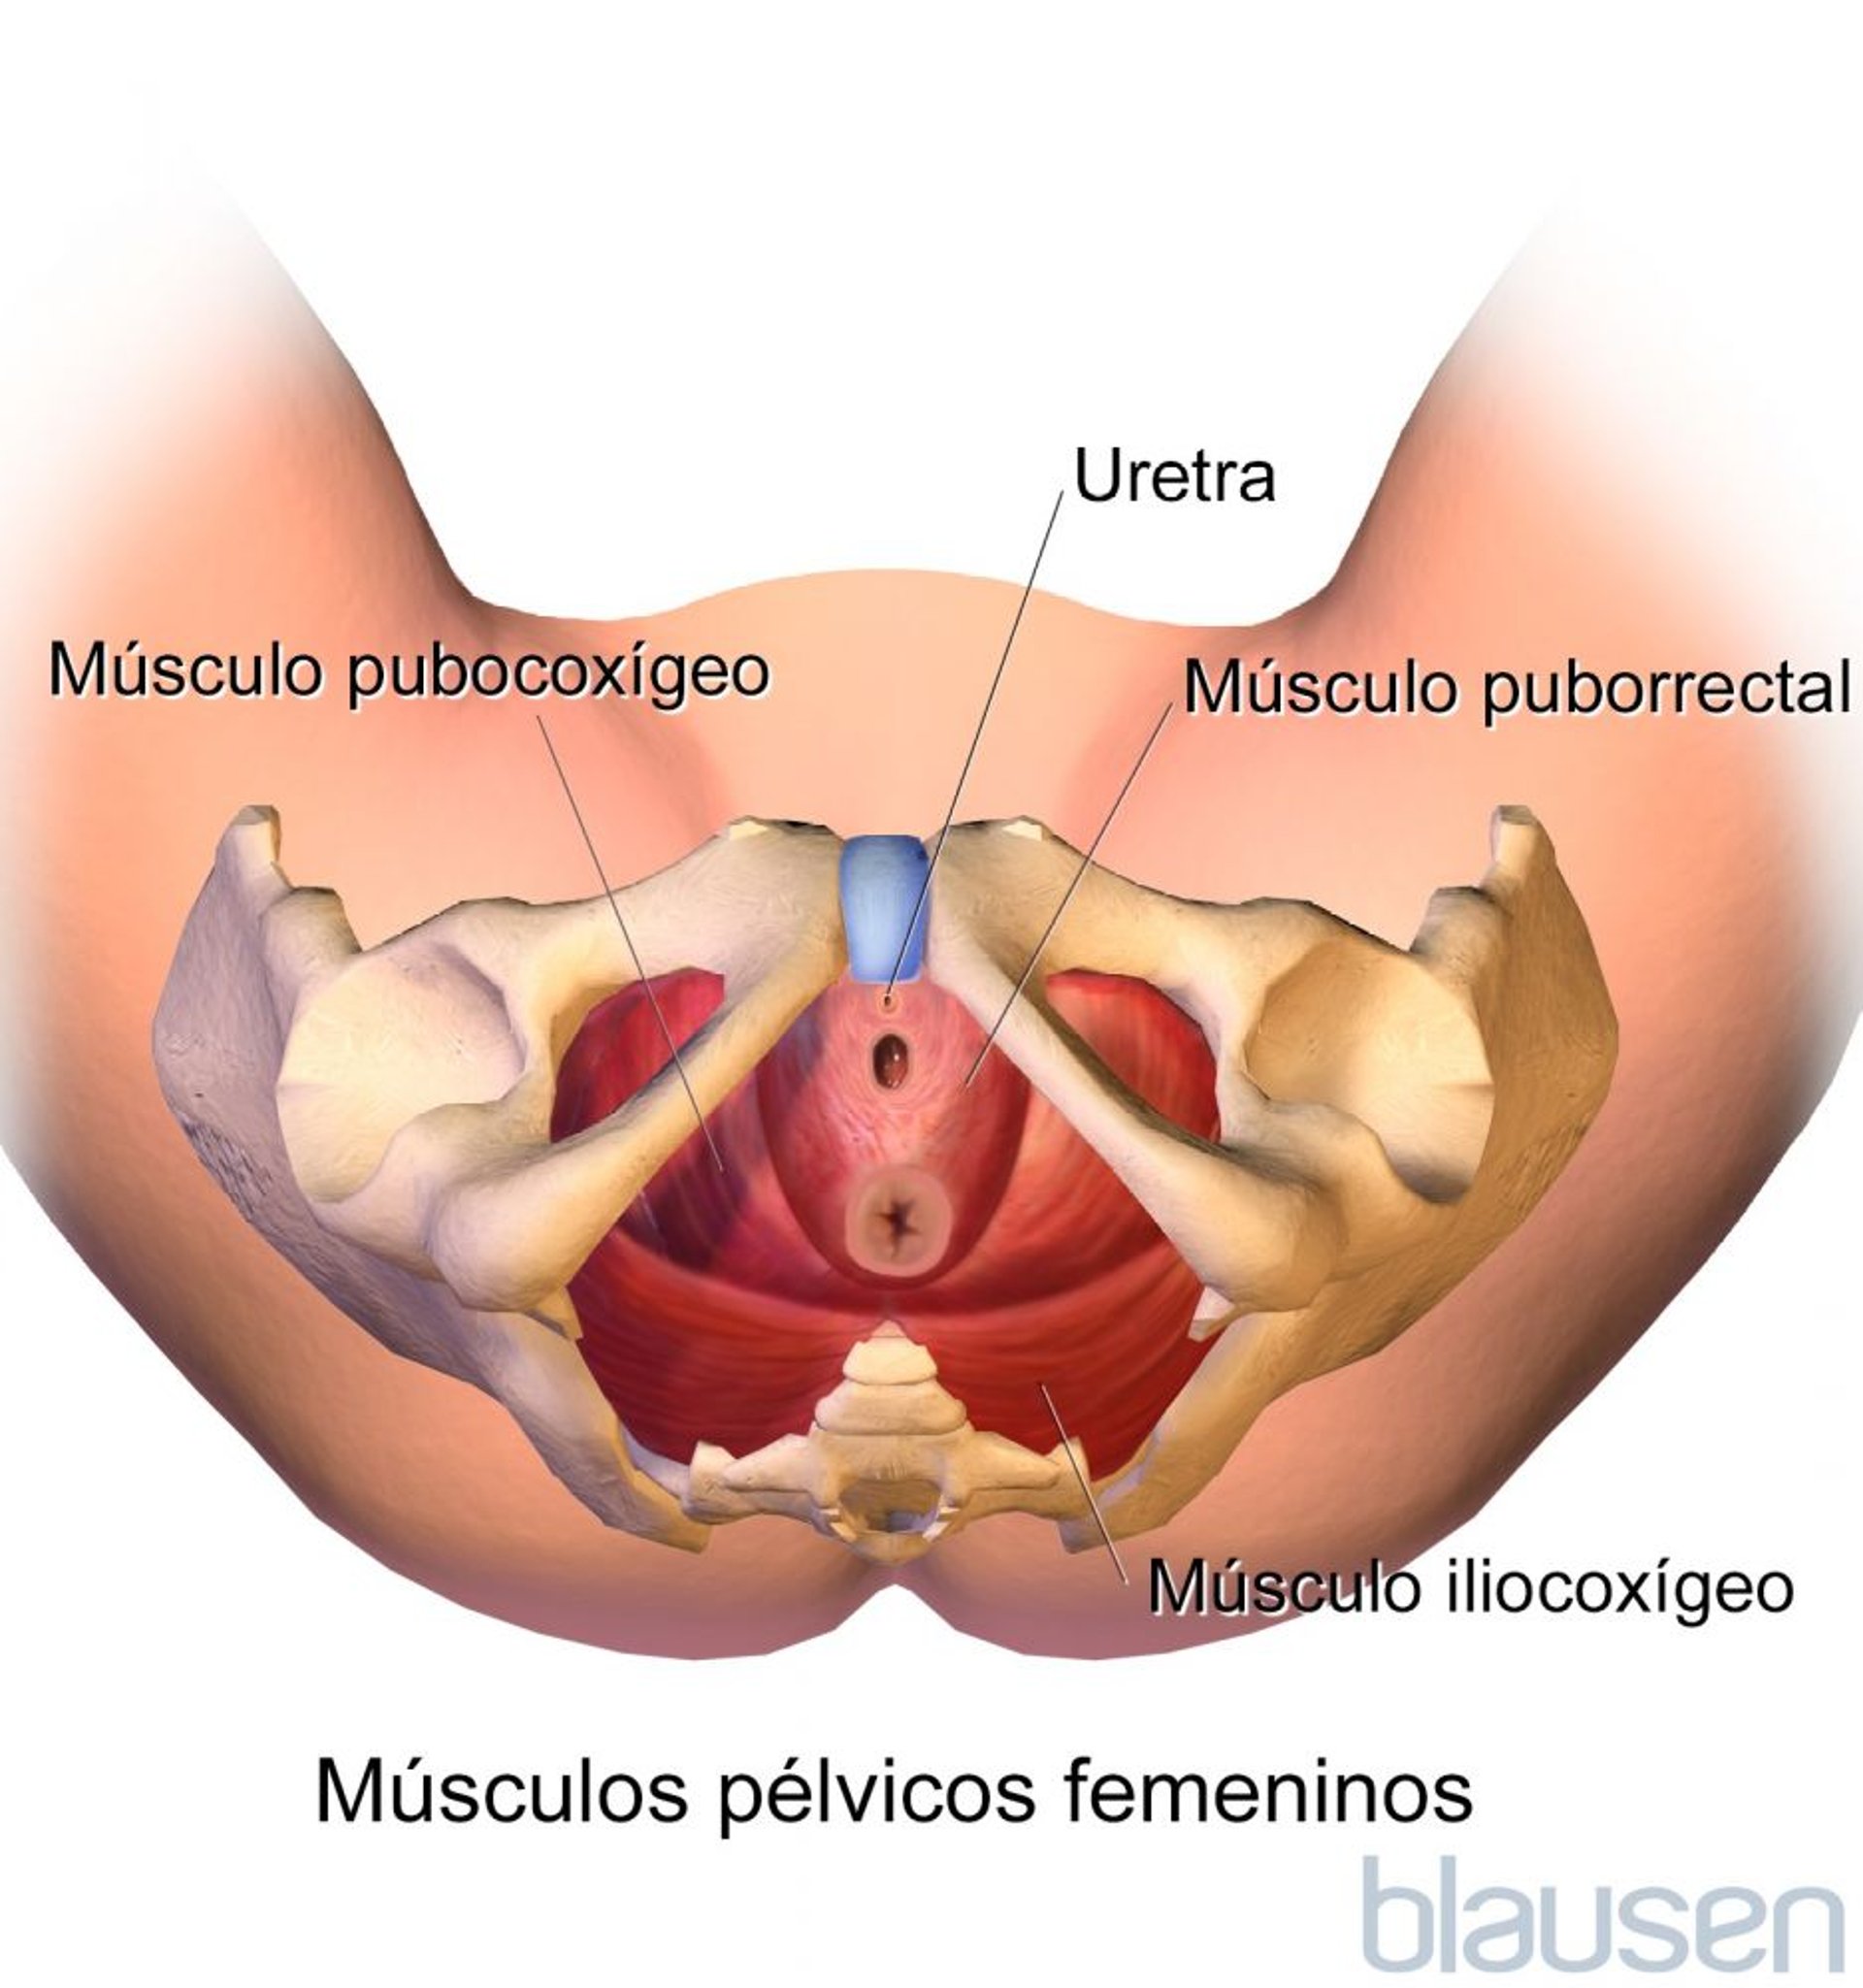 Músculos pélvicos femeninos (vista inferior)